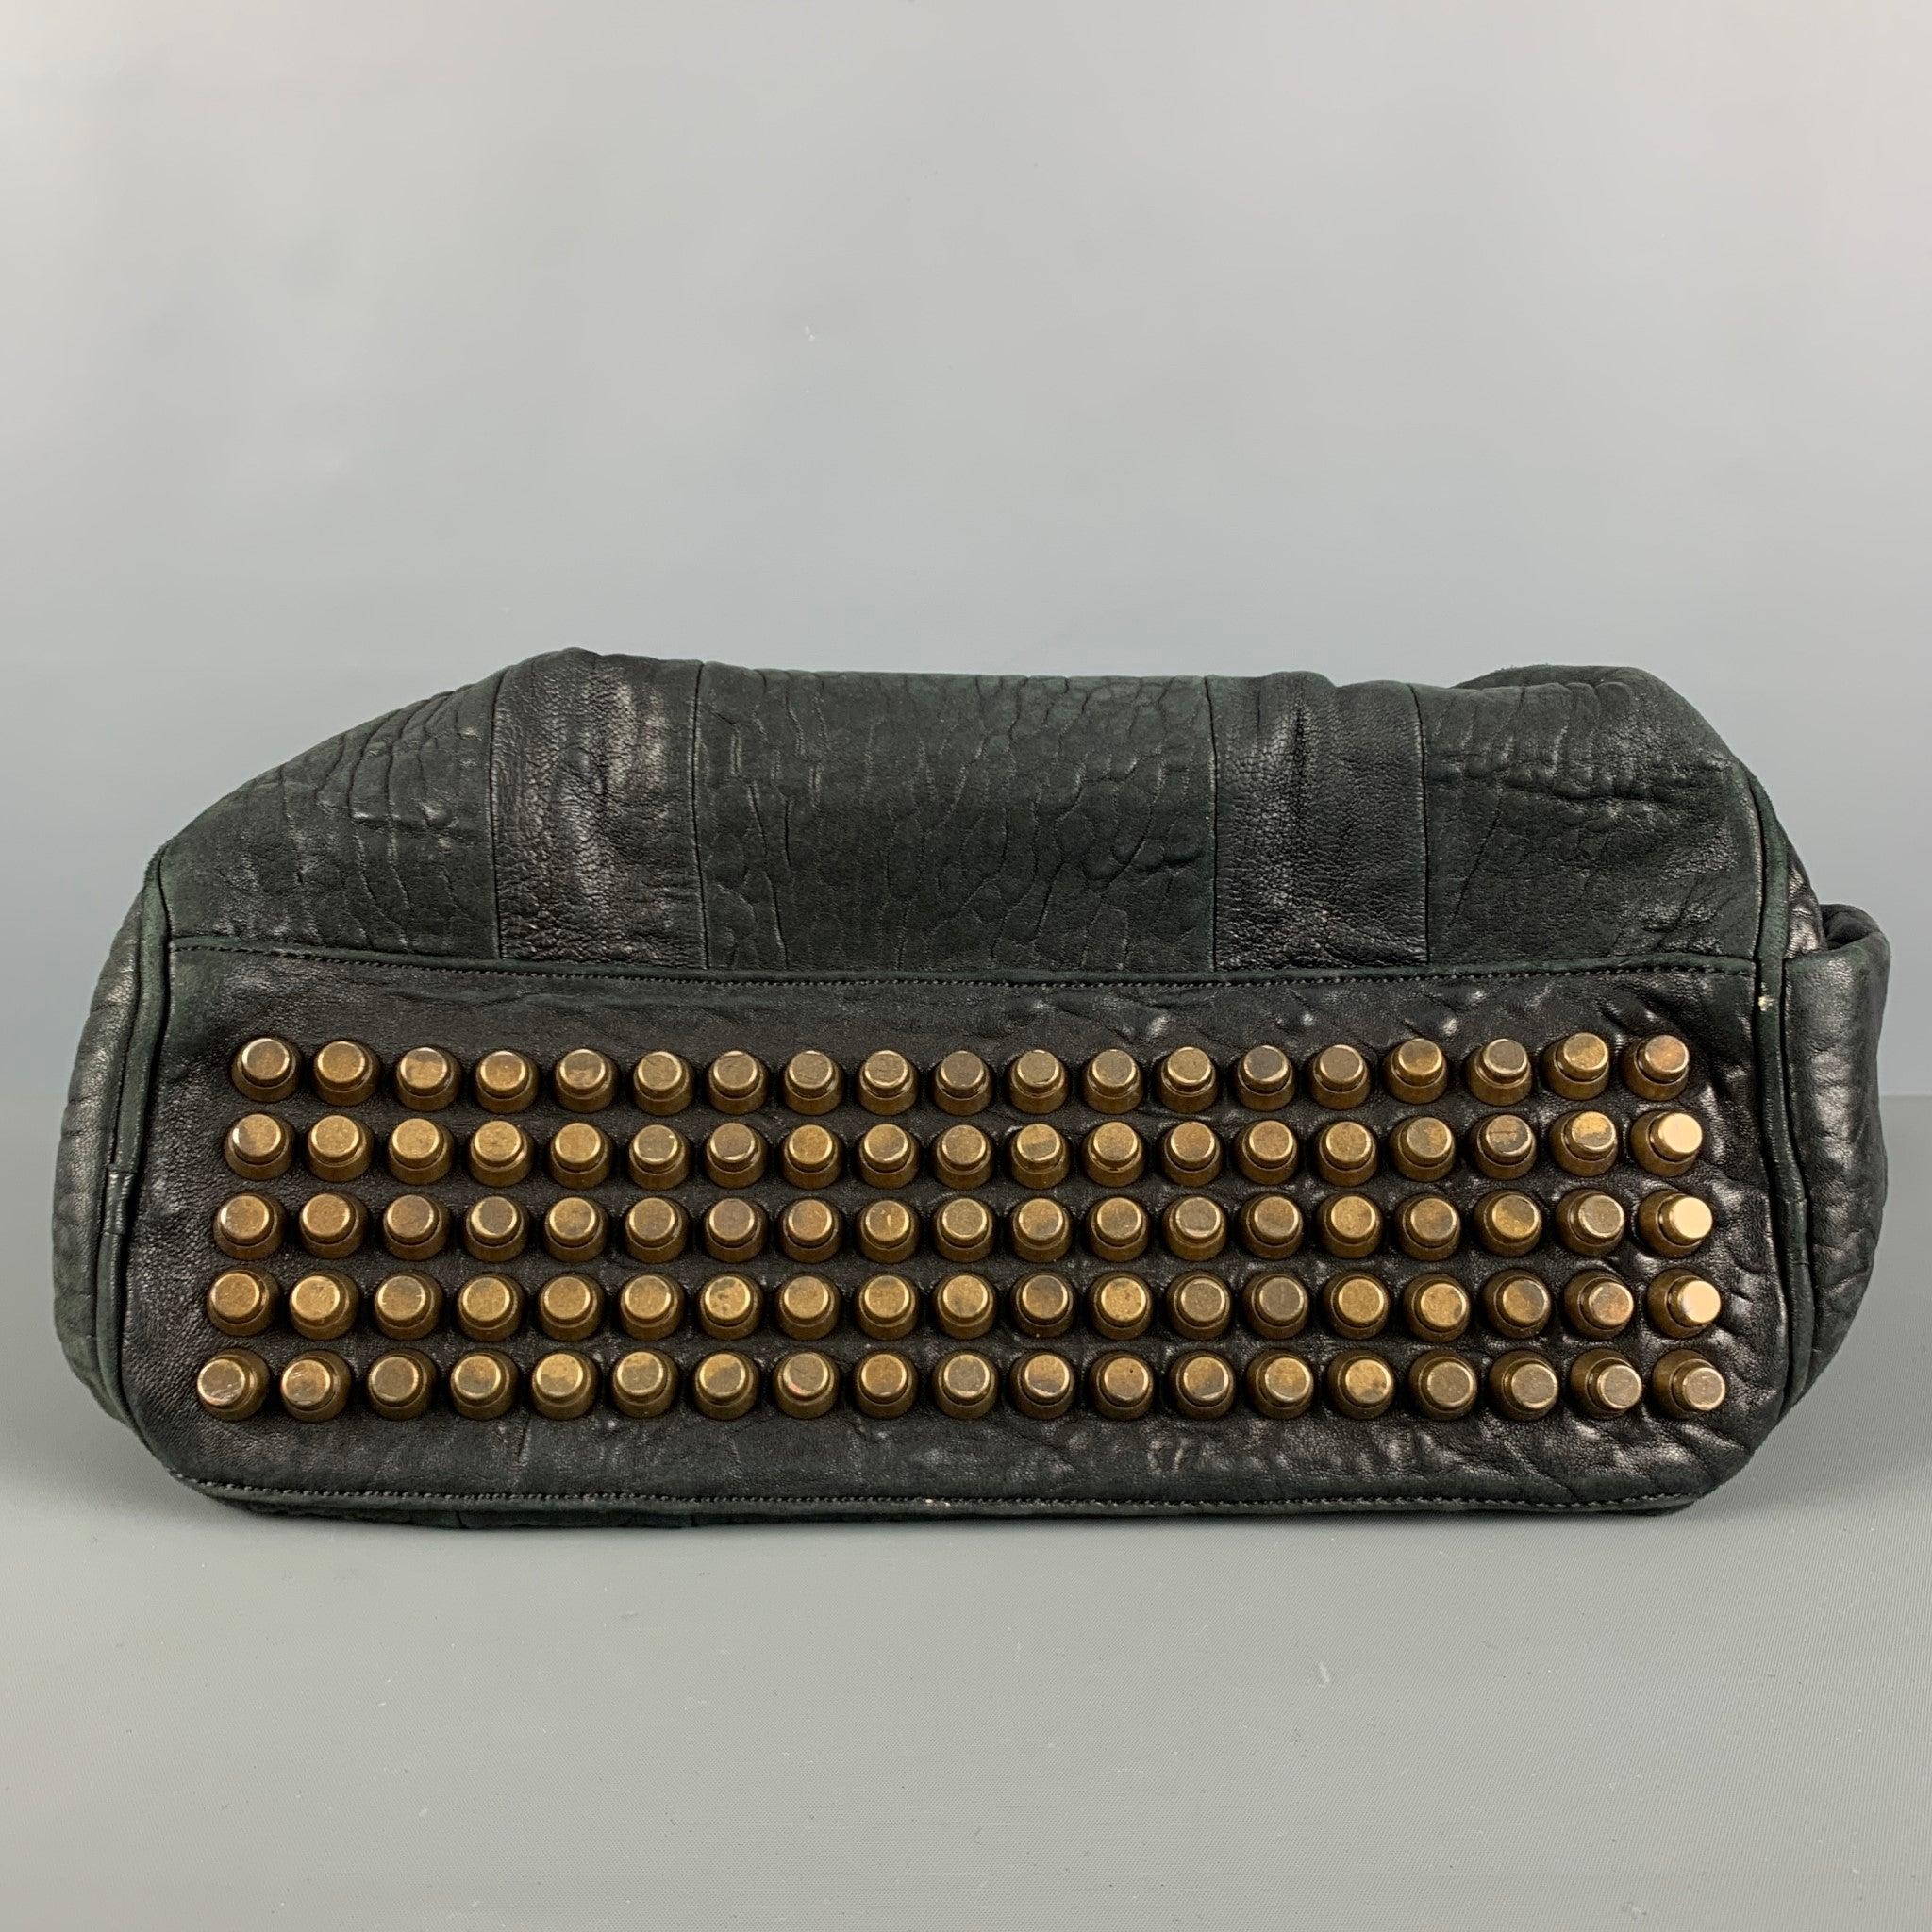 ALEXANDER WANG Black Wrinkled Leather Handbag For Sale 4